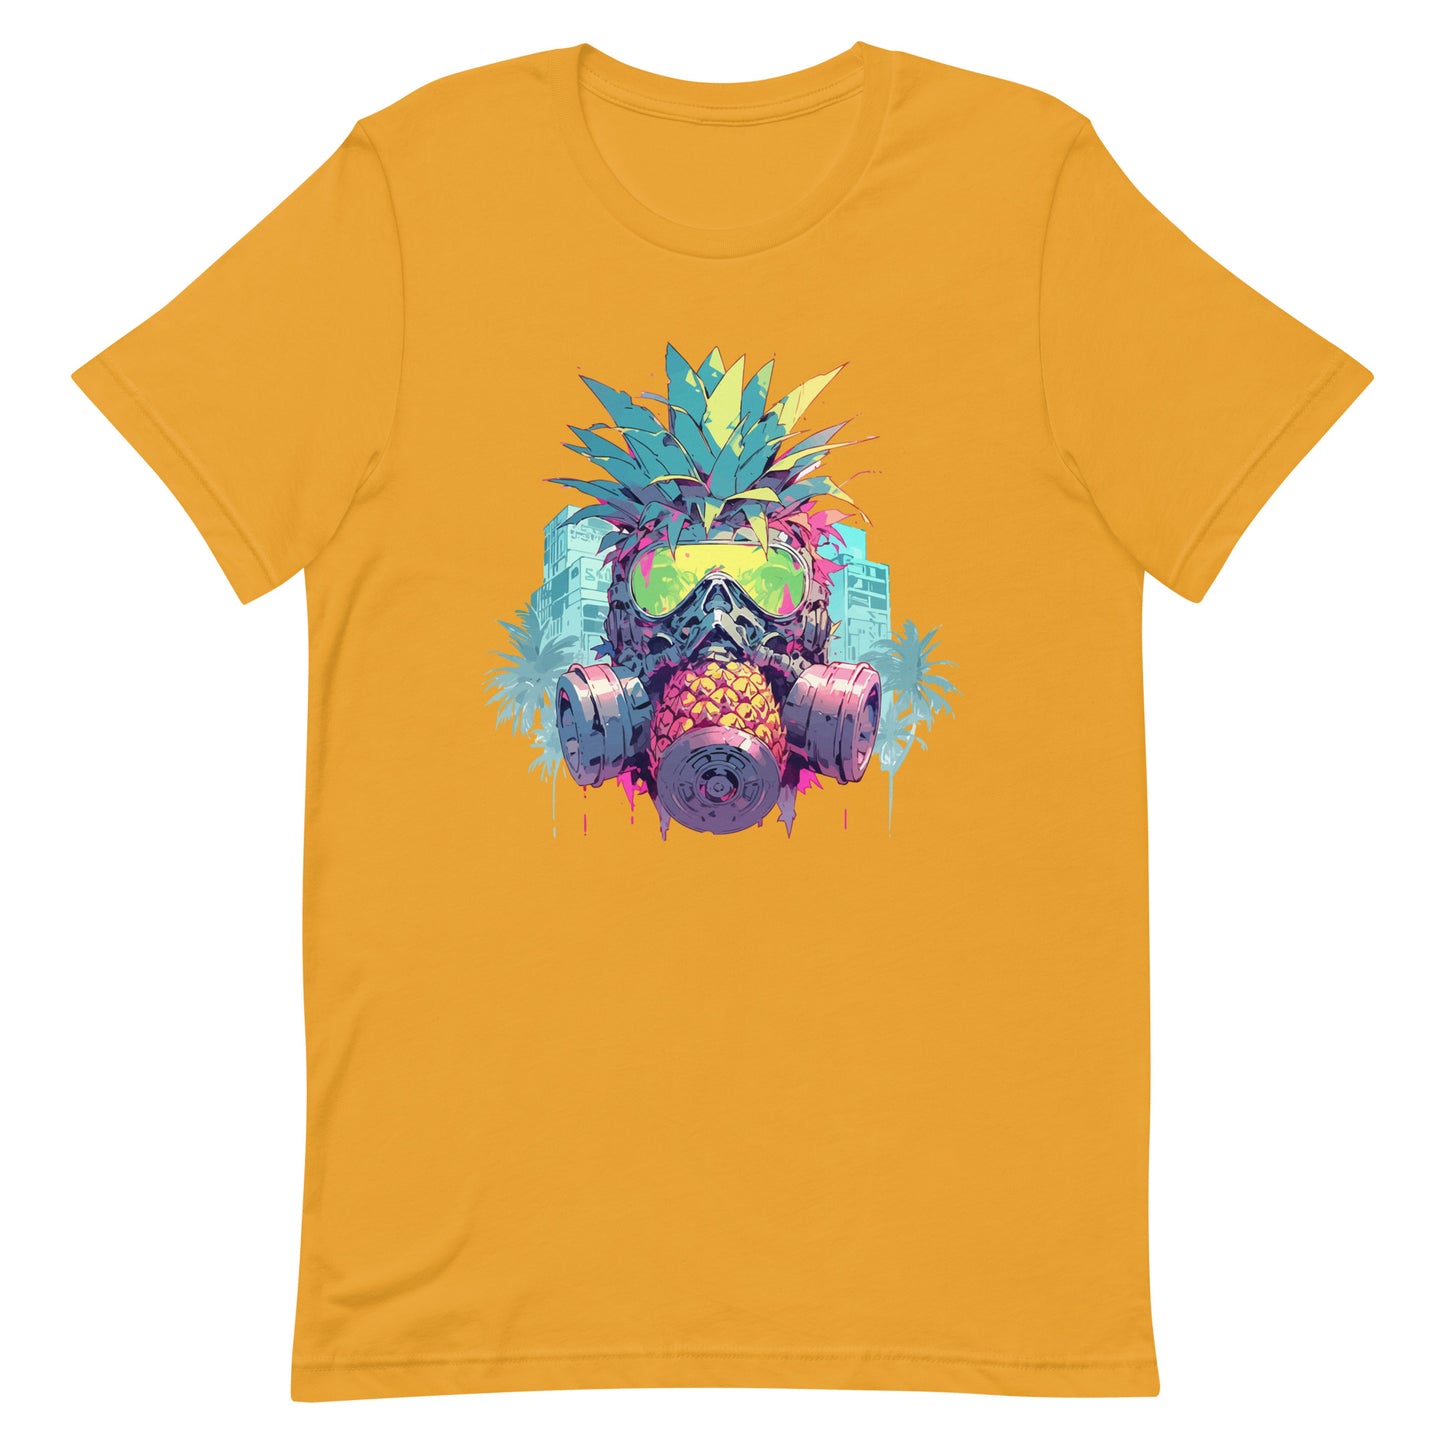 Gas mask on pineapple, Fantasy fruit illustration, Pineapple monster Pop Art, Fantastic mutant portrait - Unisex t-shirt